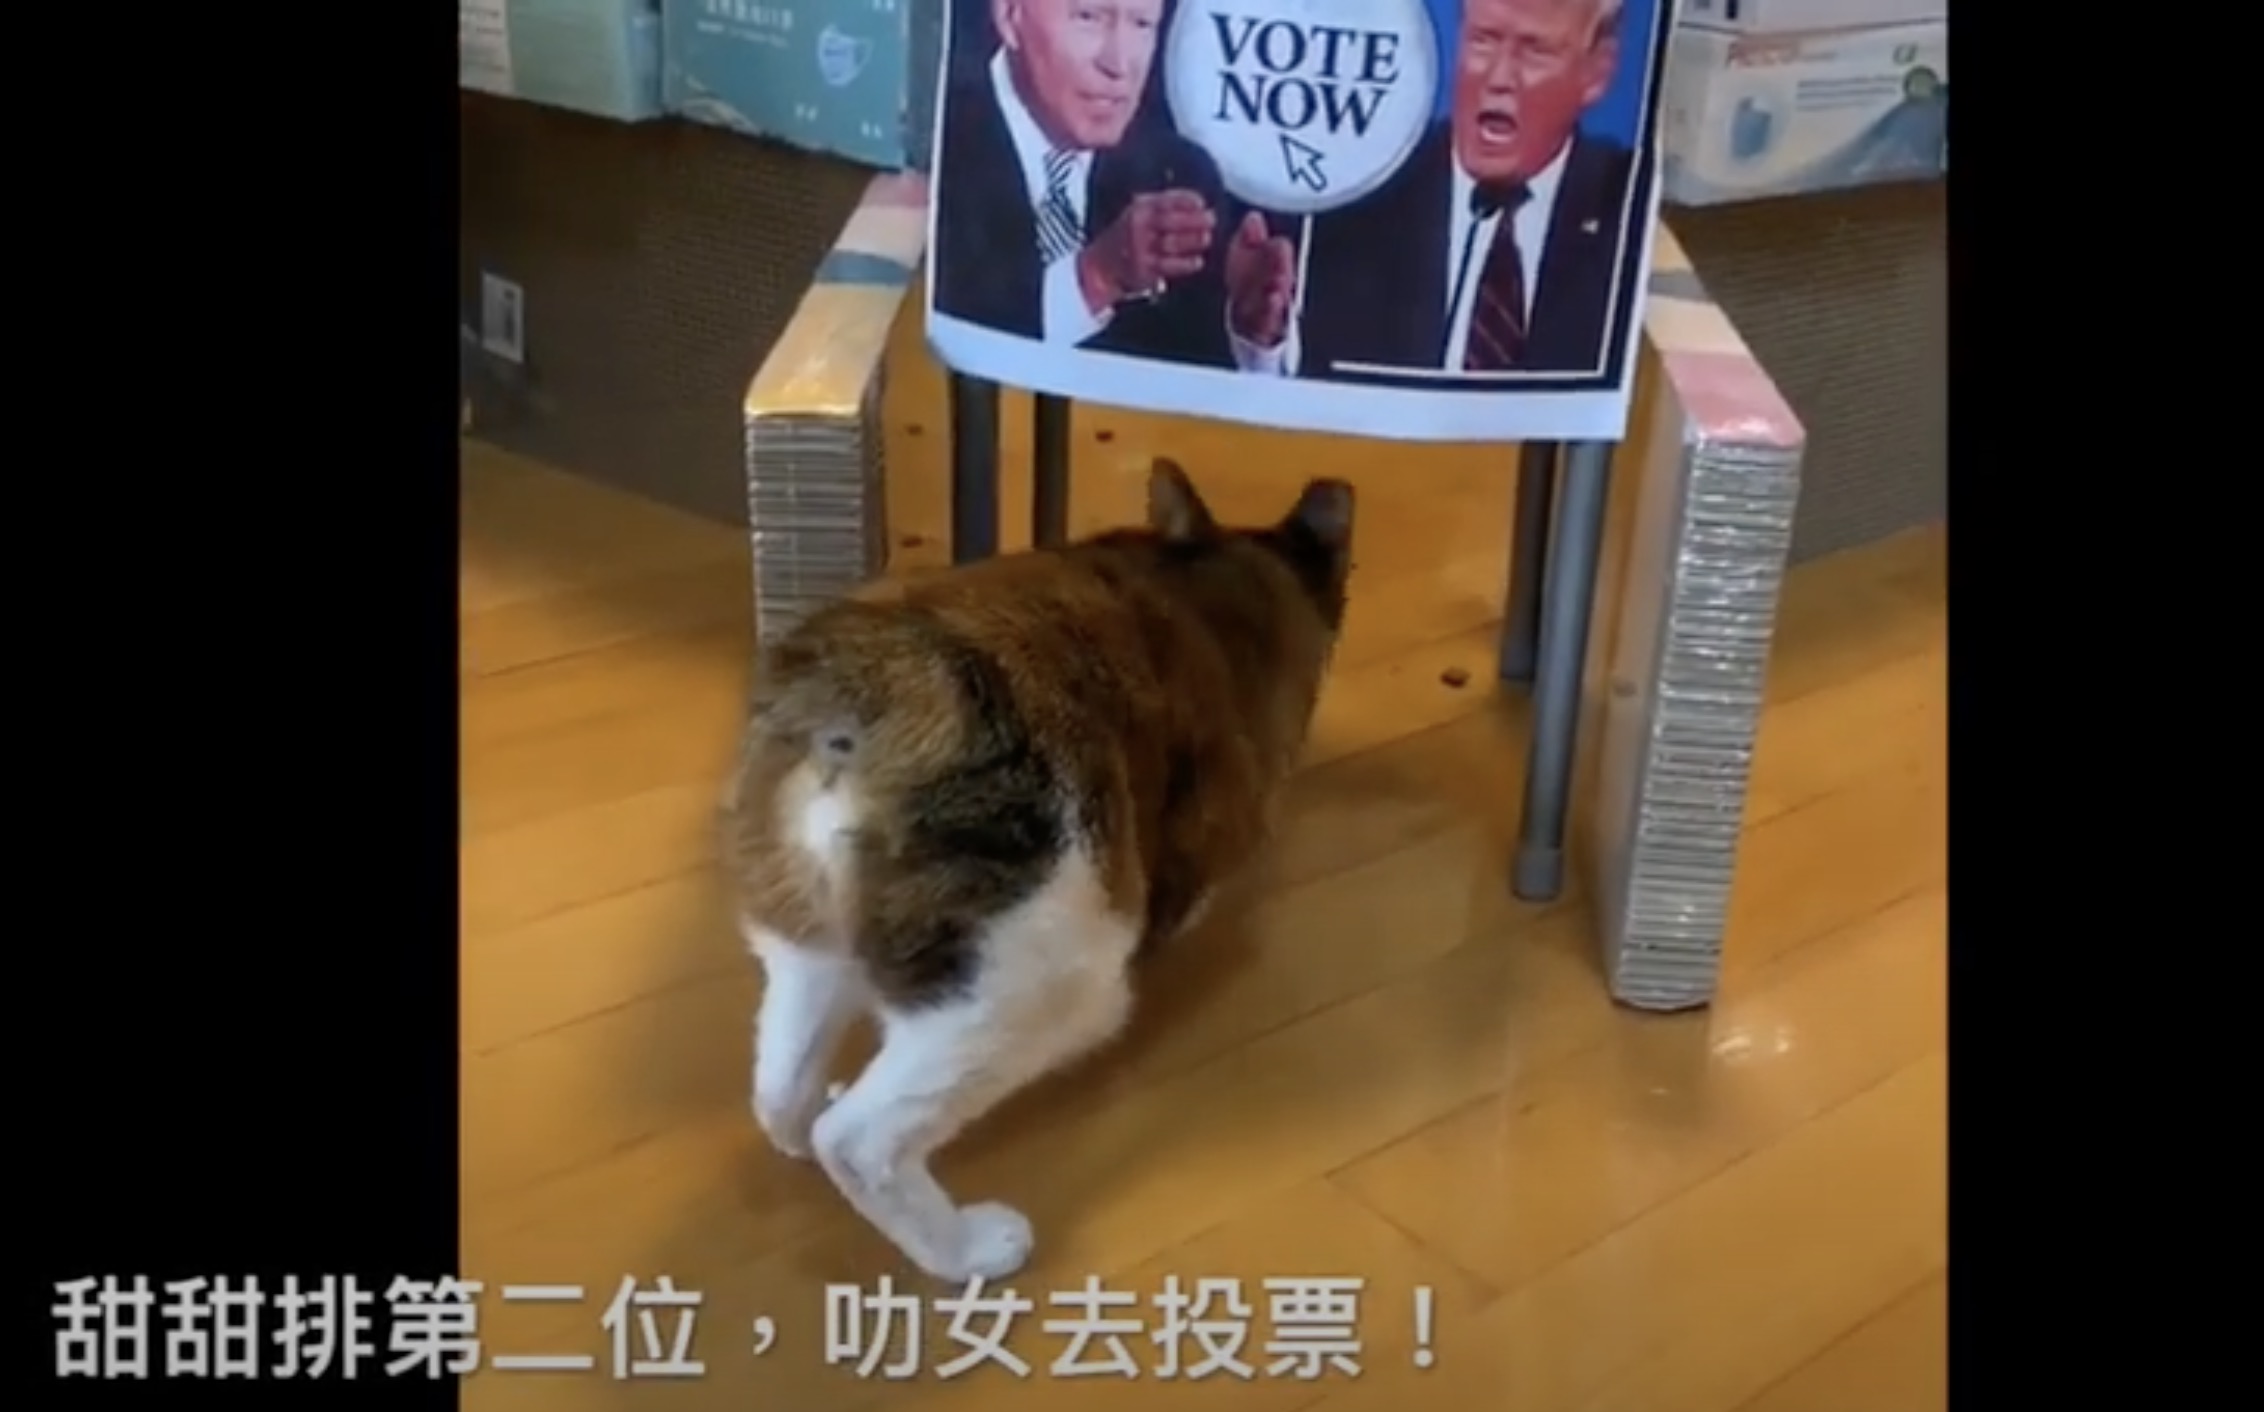 2020米大統領選大胆予想、5匹の猫の投票結果は